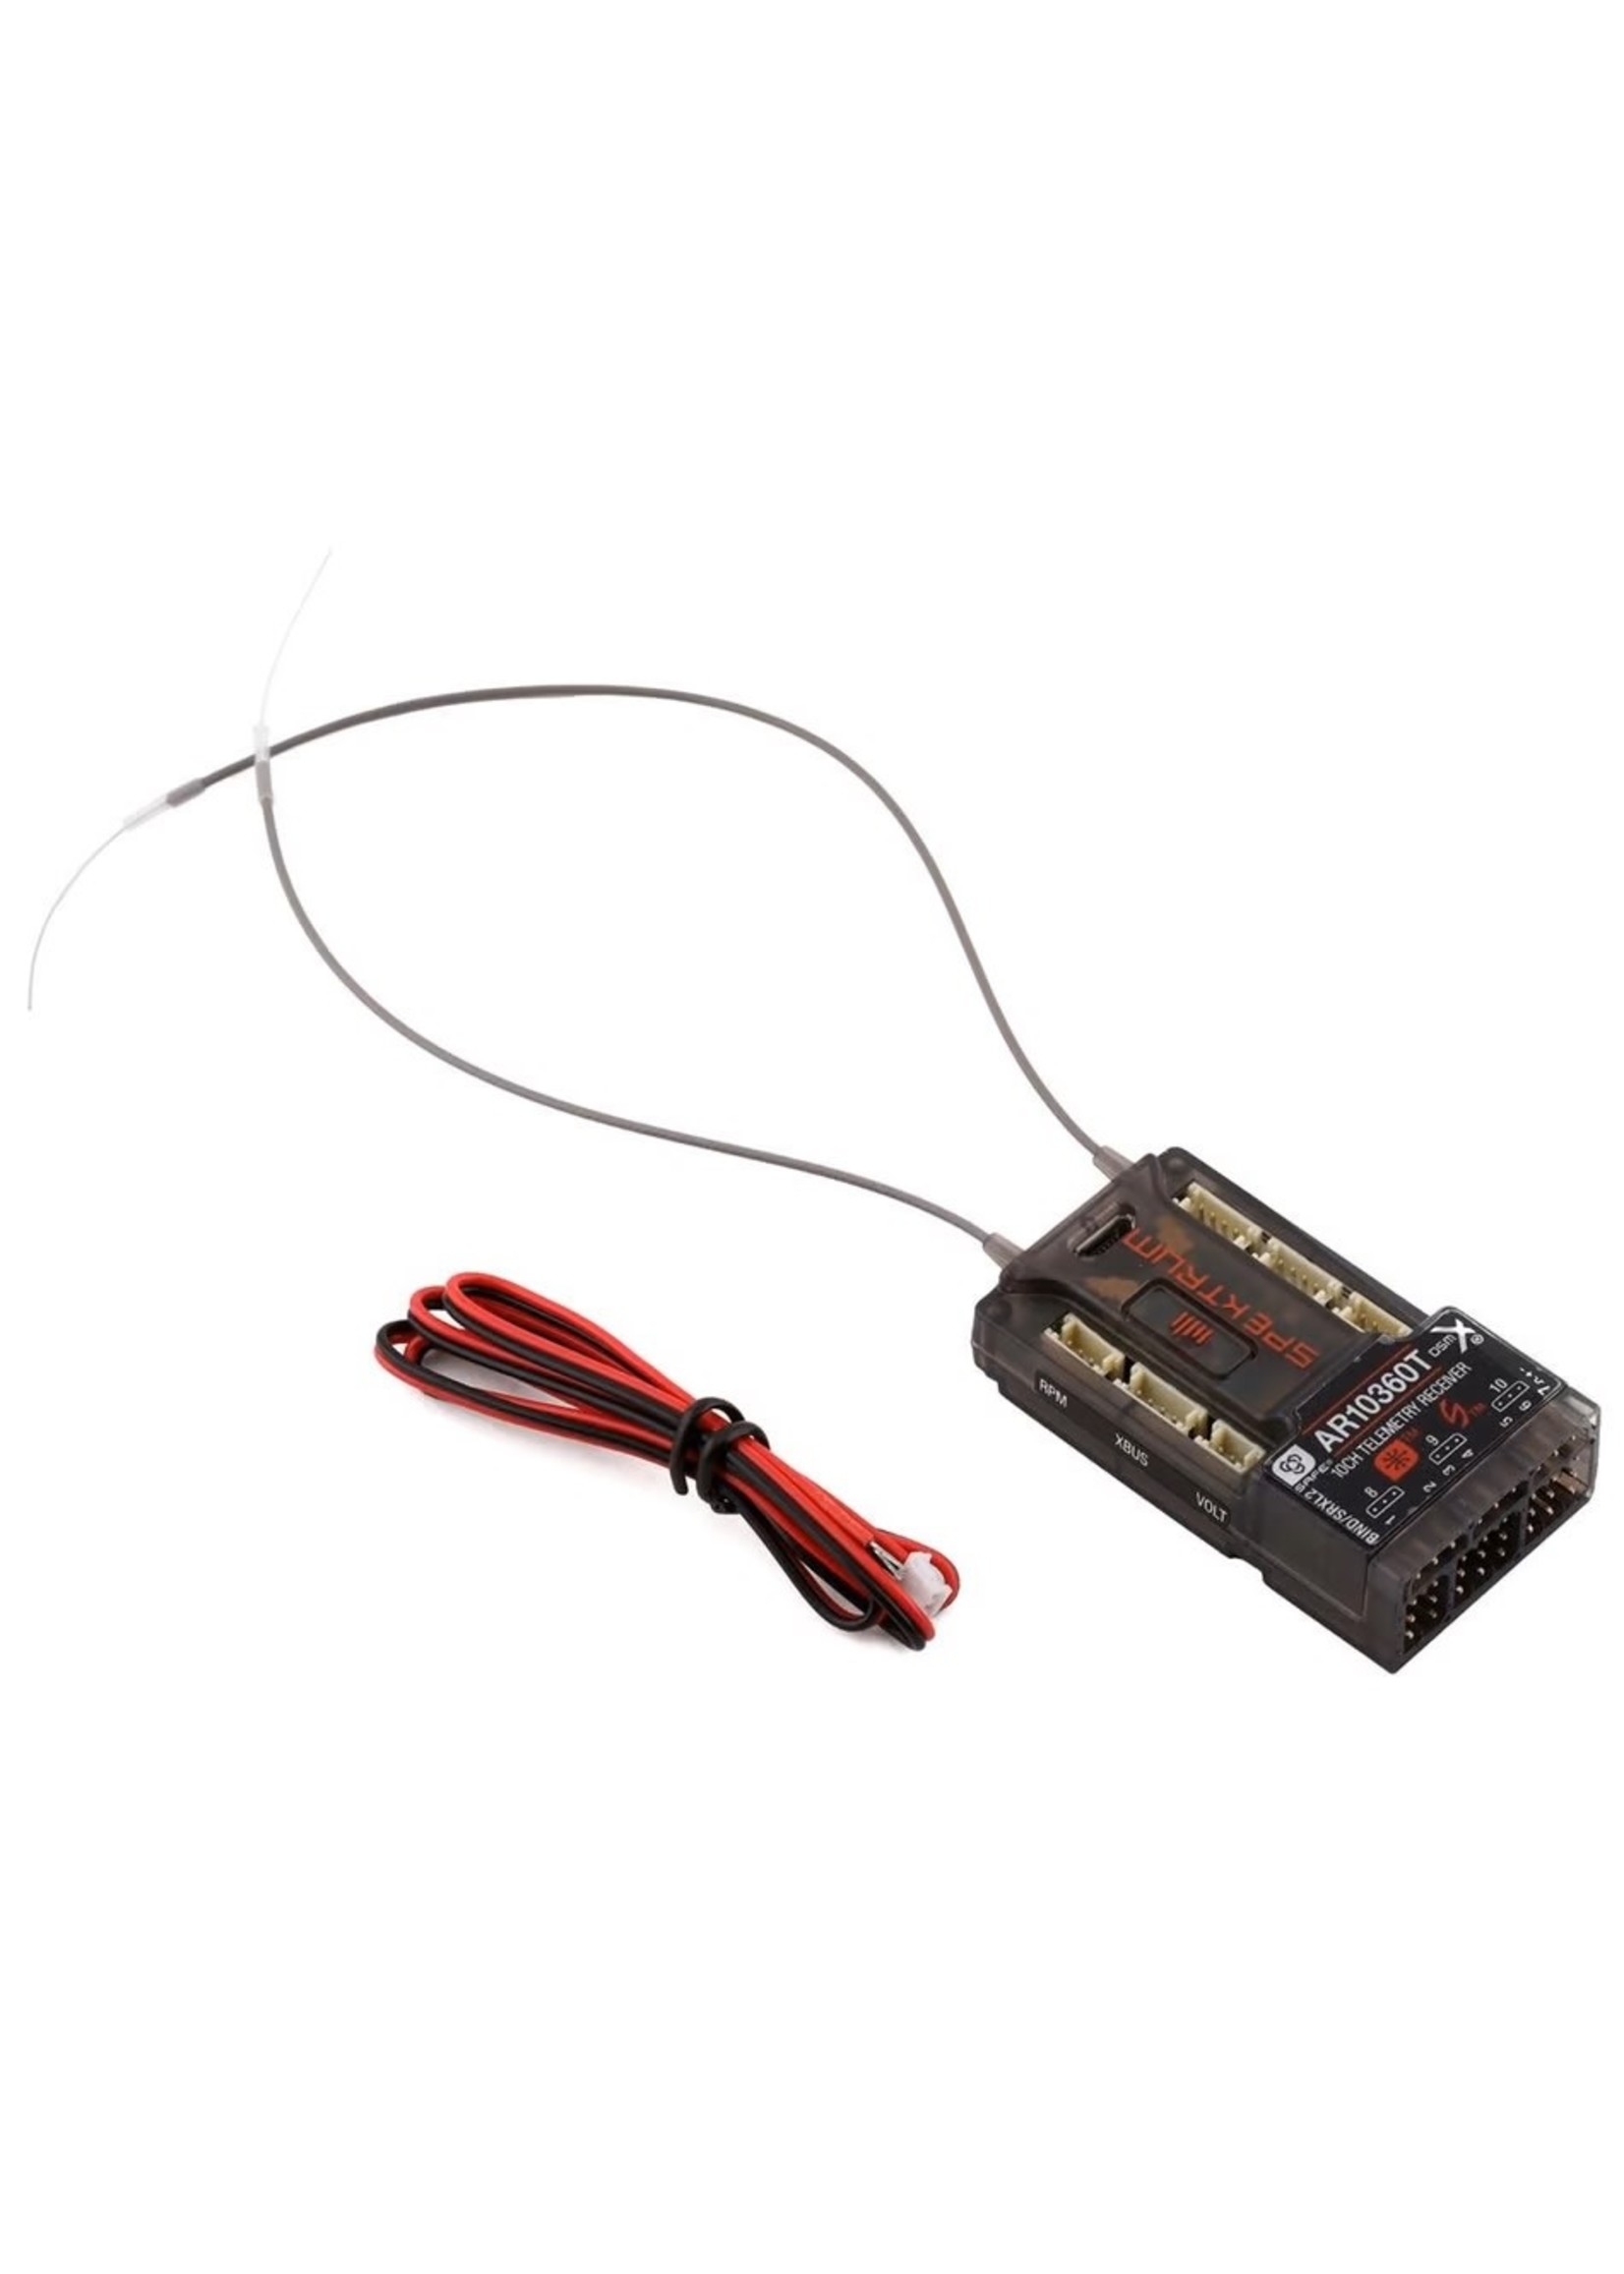 Spektrum Spektrum RC AR10360T 10-Channel DSMX AS3X & SAFE Telemetry Receiver